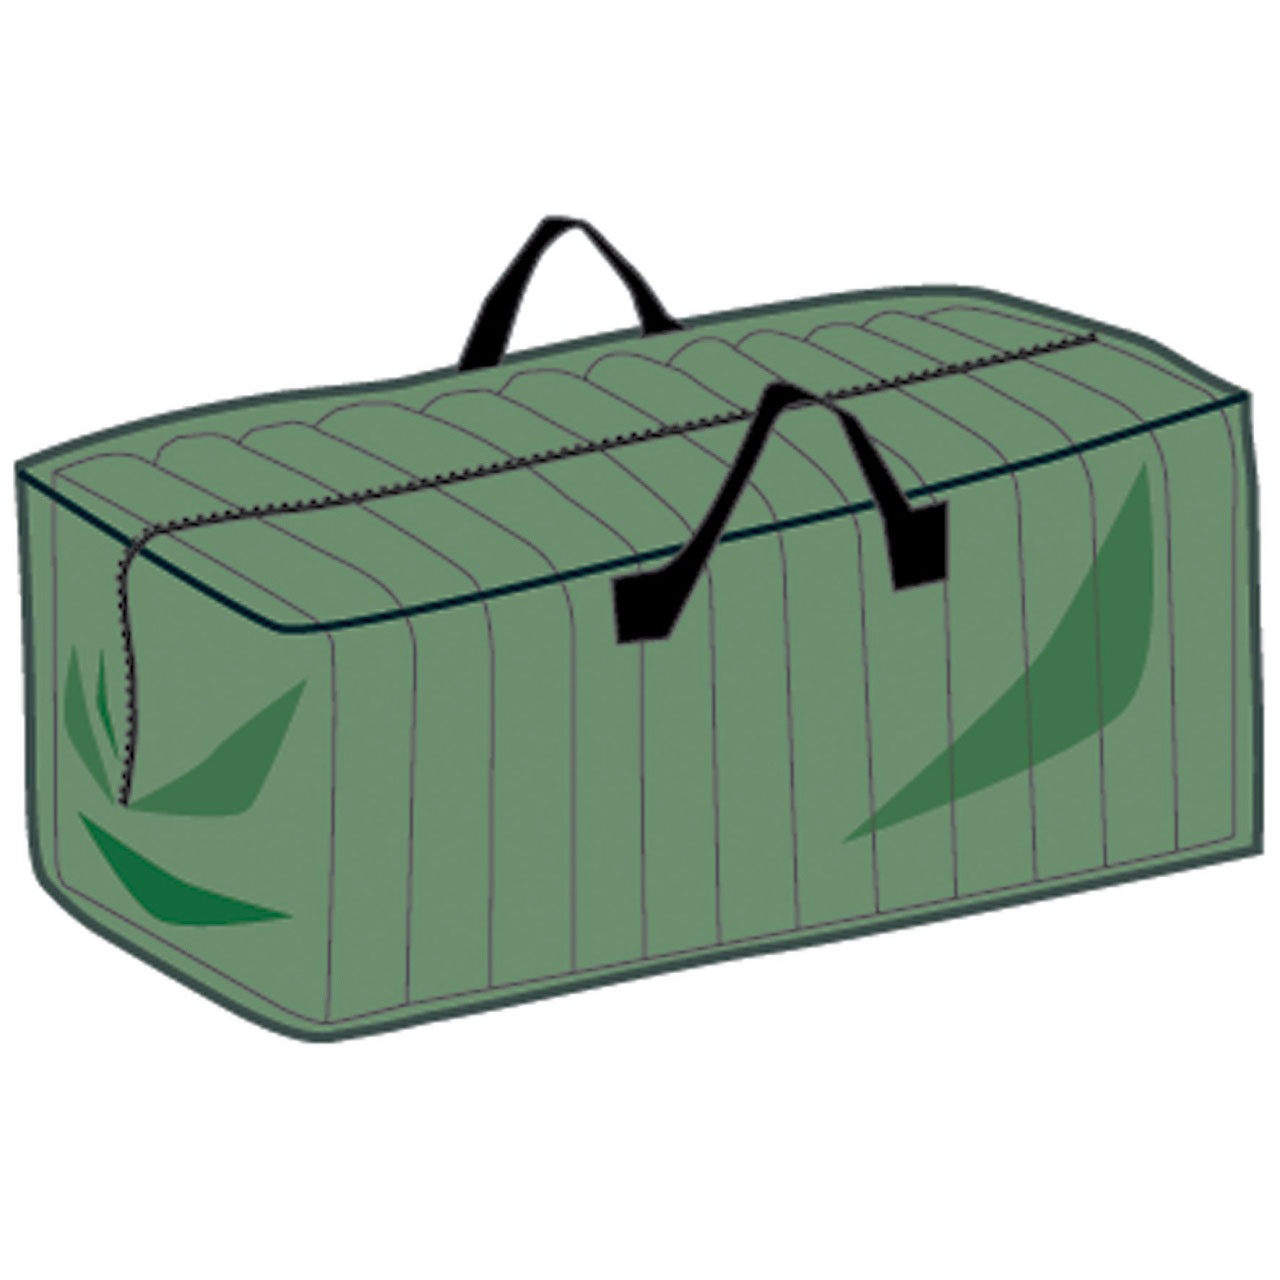 Garden Cushions Storage Bag - Centre Zip